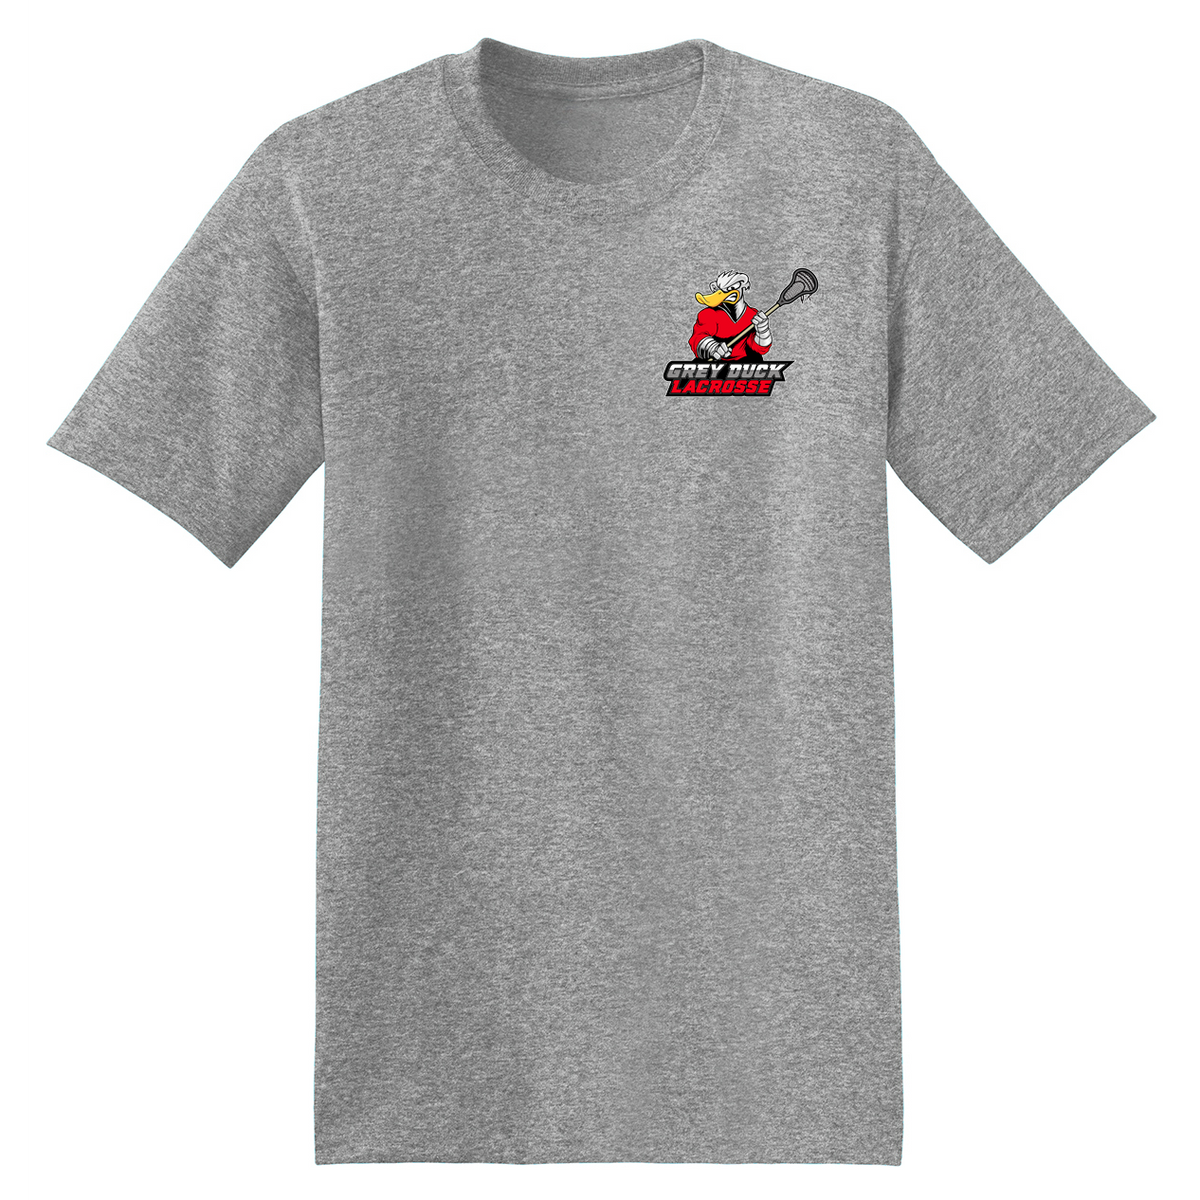 Grey Duck Lacrosse T-Shirt